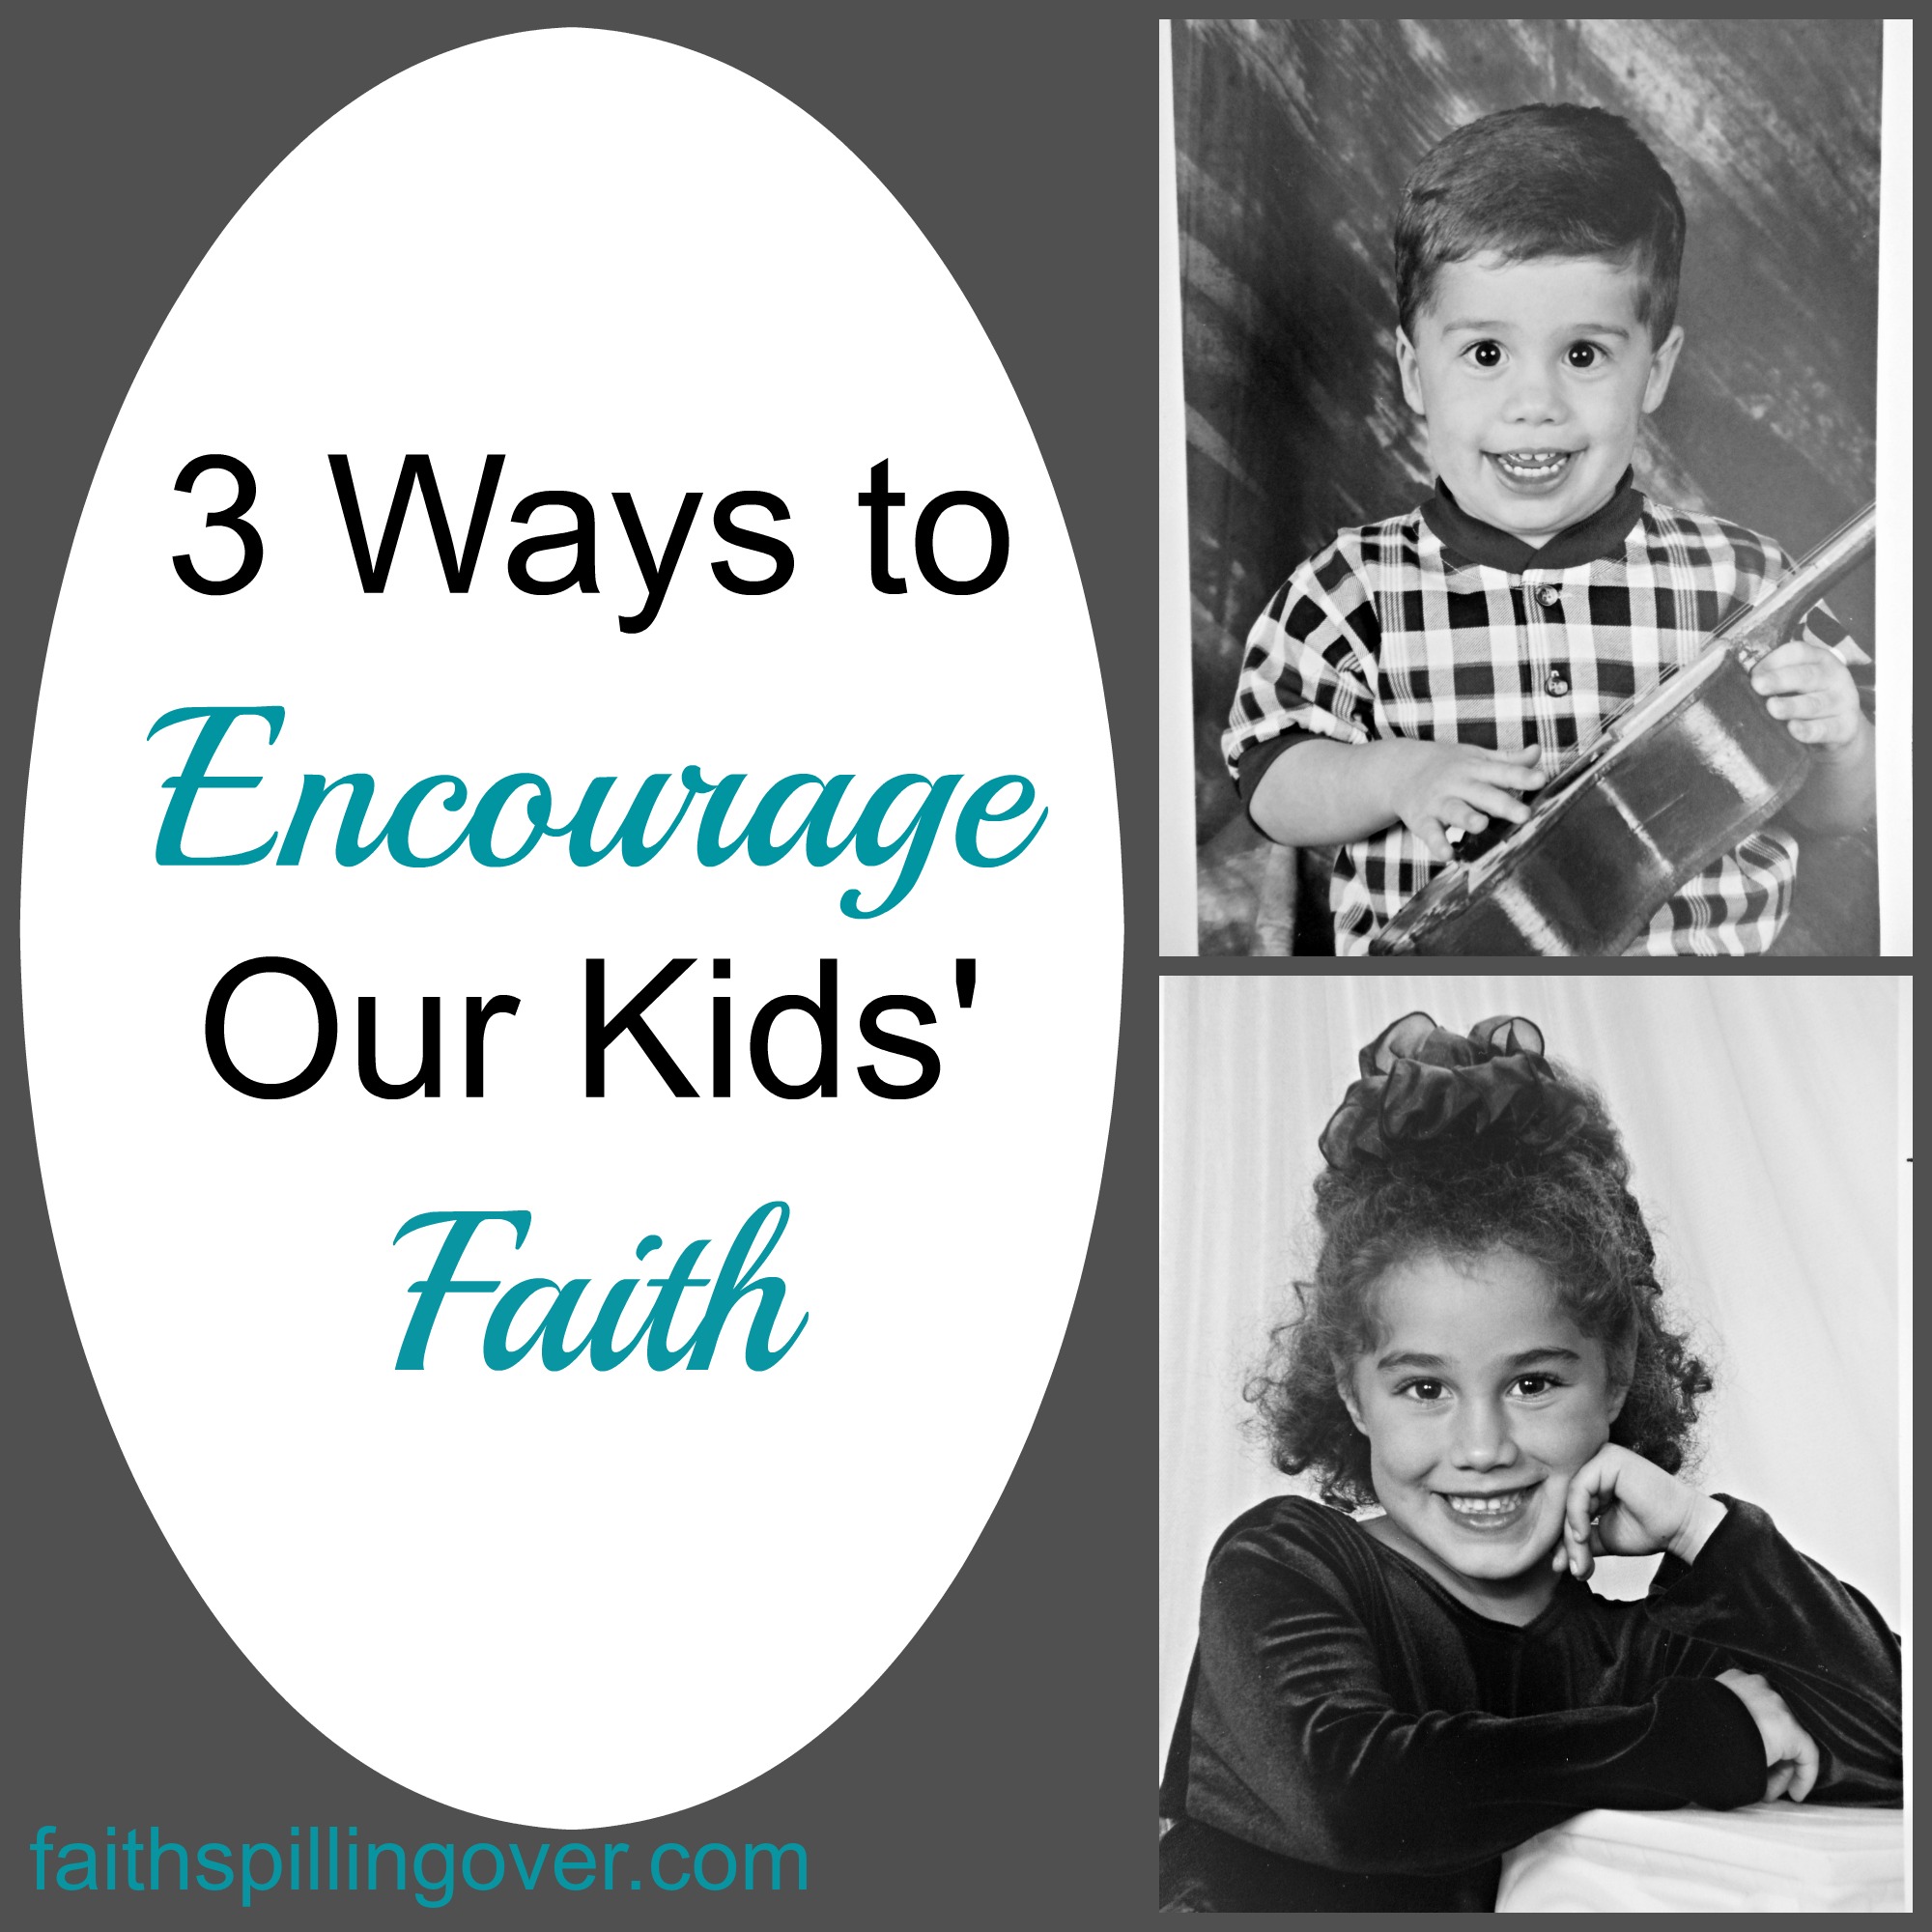 3 Ways to Encourage Our Kids' Faith